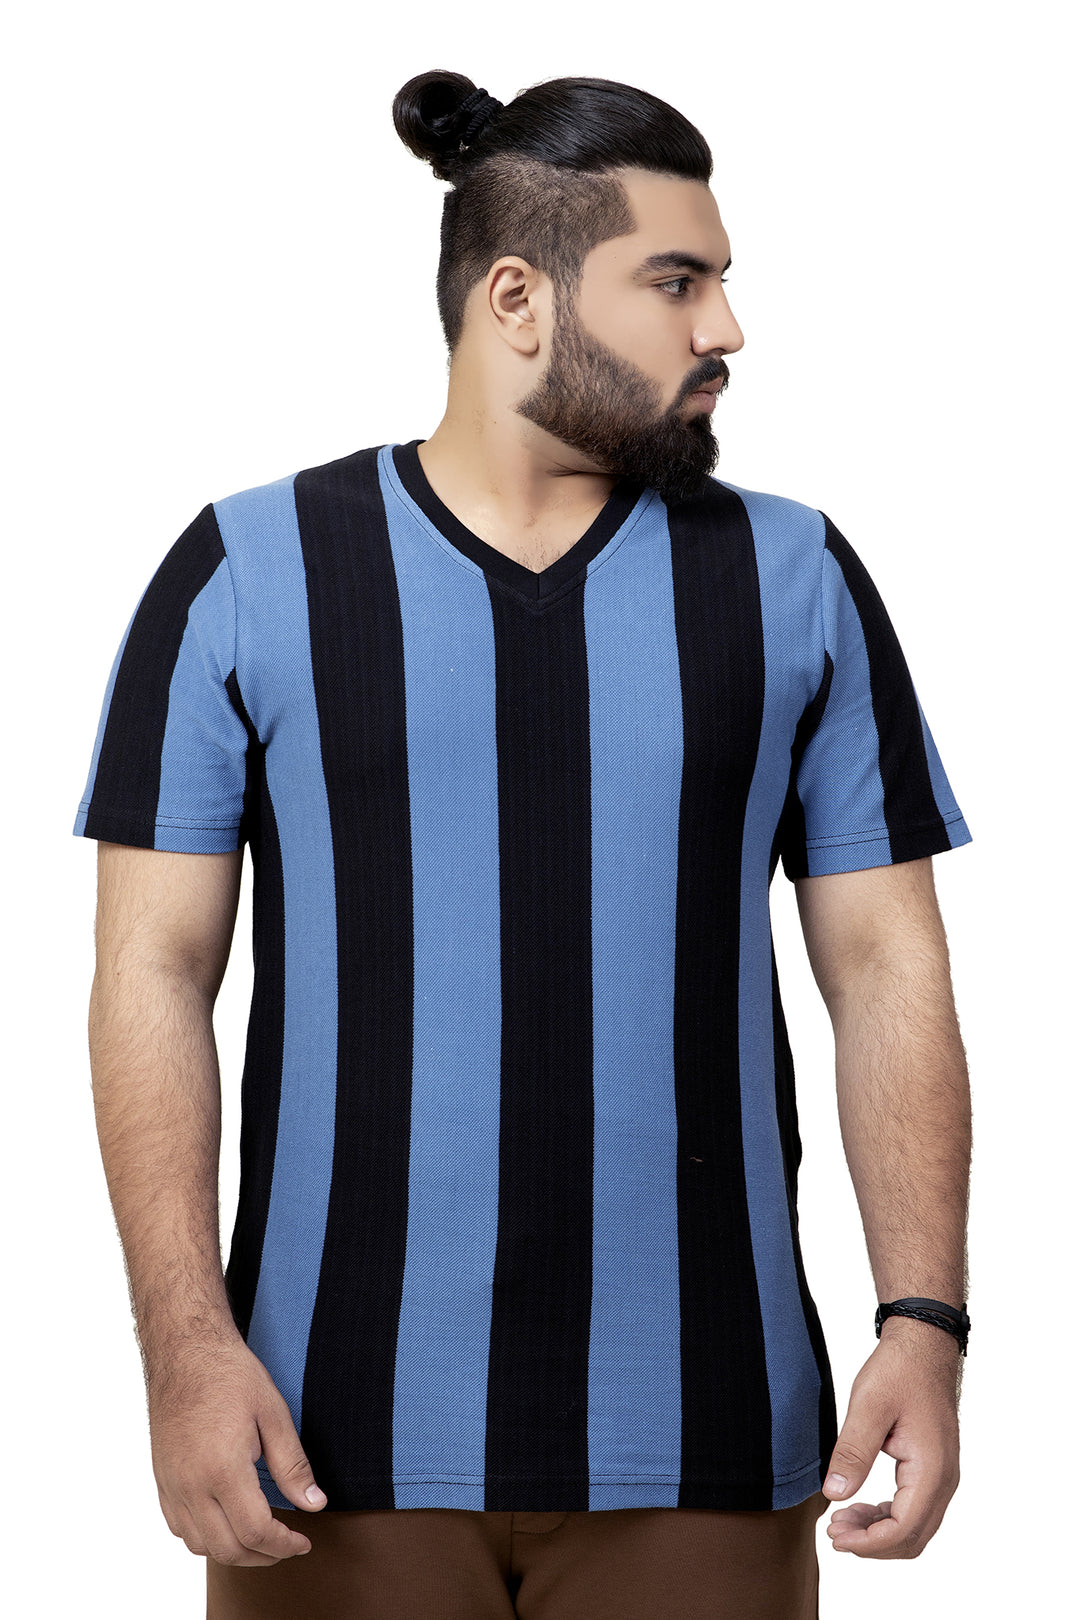 Plus Size Color Block T-Shirts in Pakistan